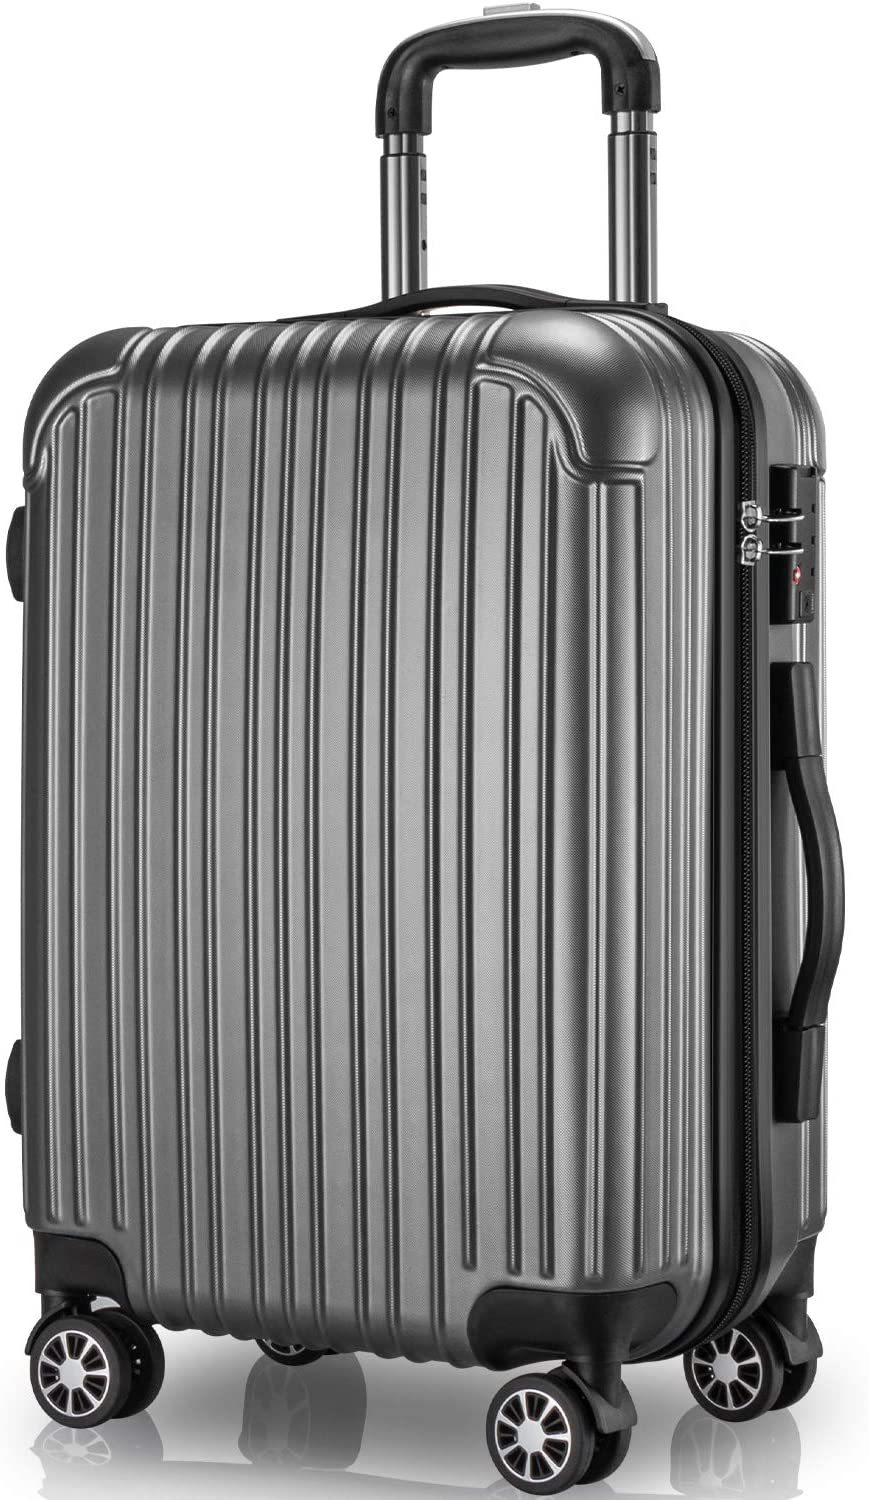 スーツケース 機内持ち込み S サイズ キャリーケース キャリーバッグ 2